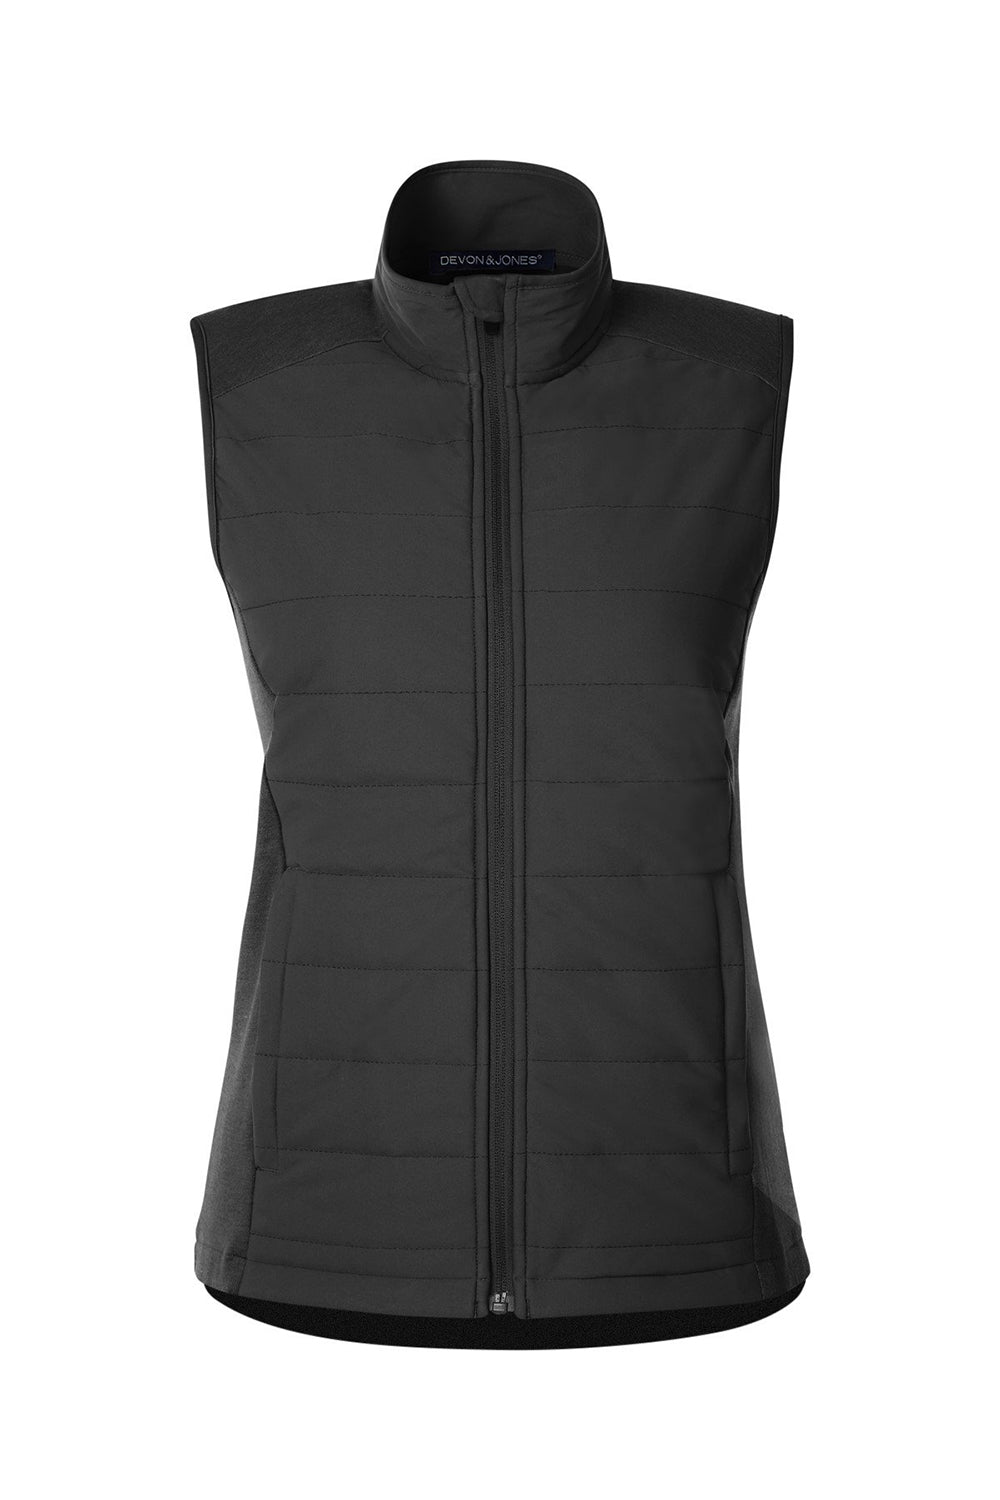 Devon & Jones DG706W Womens New Classics Charleston Hybrid Full Zip Vest Black Melange/Black Flat Front